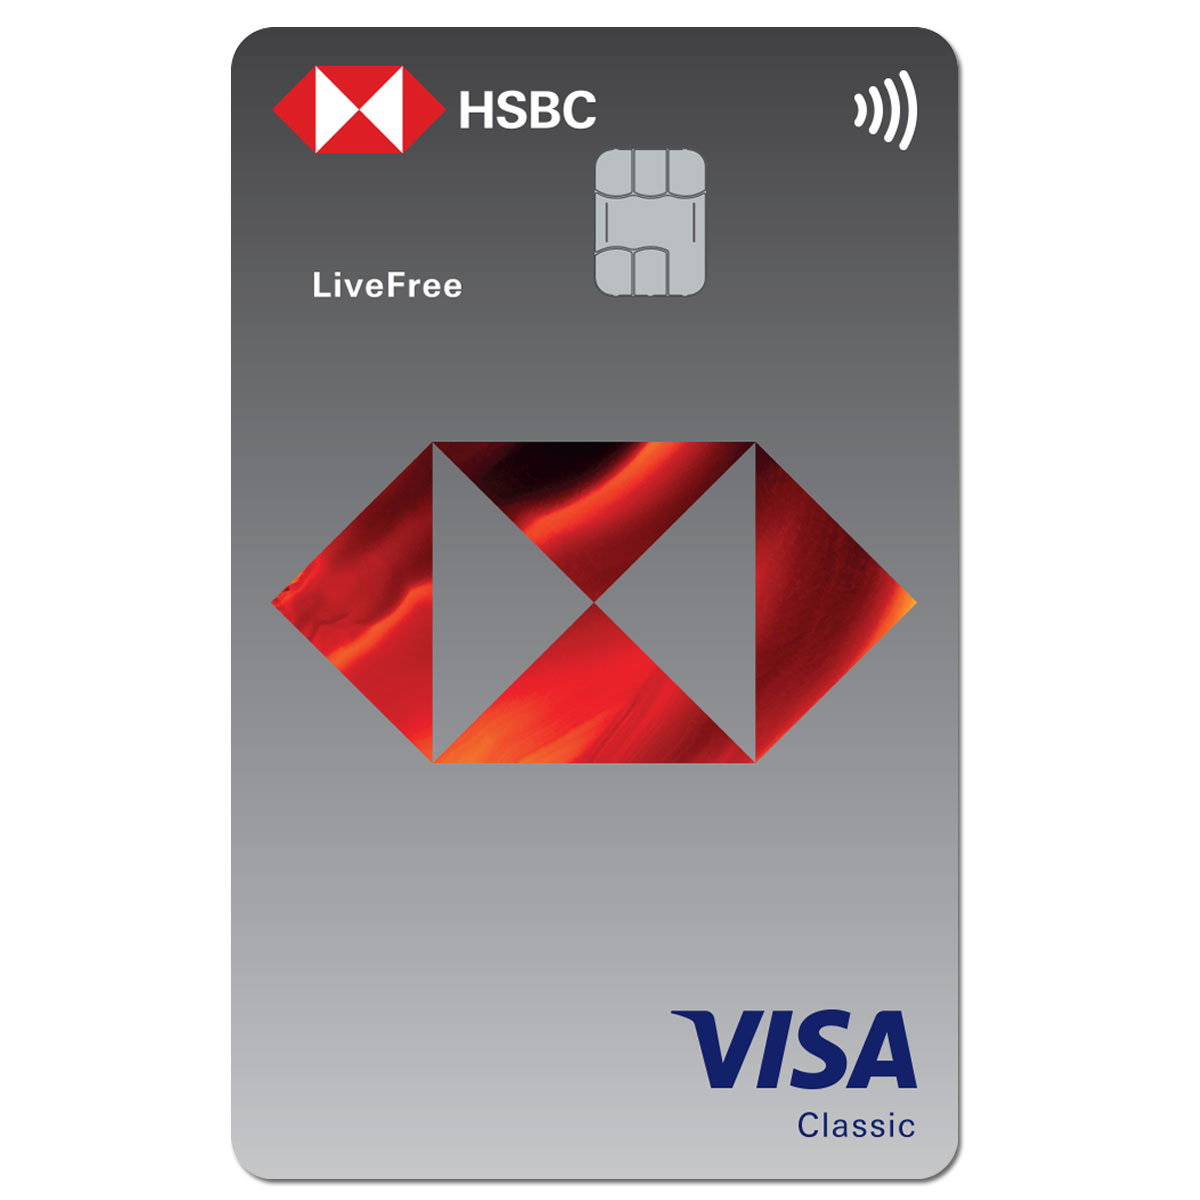 Mở thẻ tín dụng: Mở thẻ tín dụng có thể giúp bạn tiết kiệm chi phí và tận hưởng nhiều ưu đãi hấp dẫn. Điều quan trọng là phải biết cách sử dụng thẻ một cách thông minh. Hãy xem hình ảnh để tìm hiểu về các quy trình mở thẻ tín dụng và cách sử dụng hiệu quả.